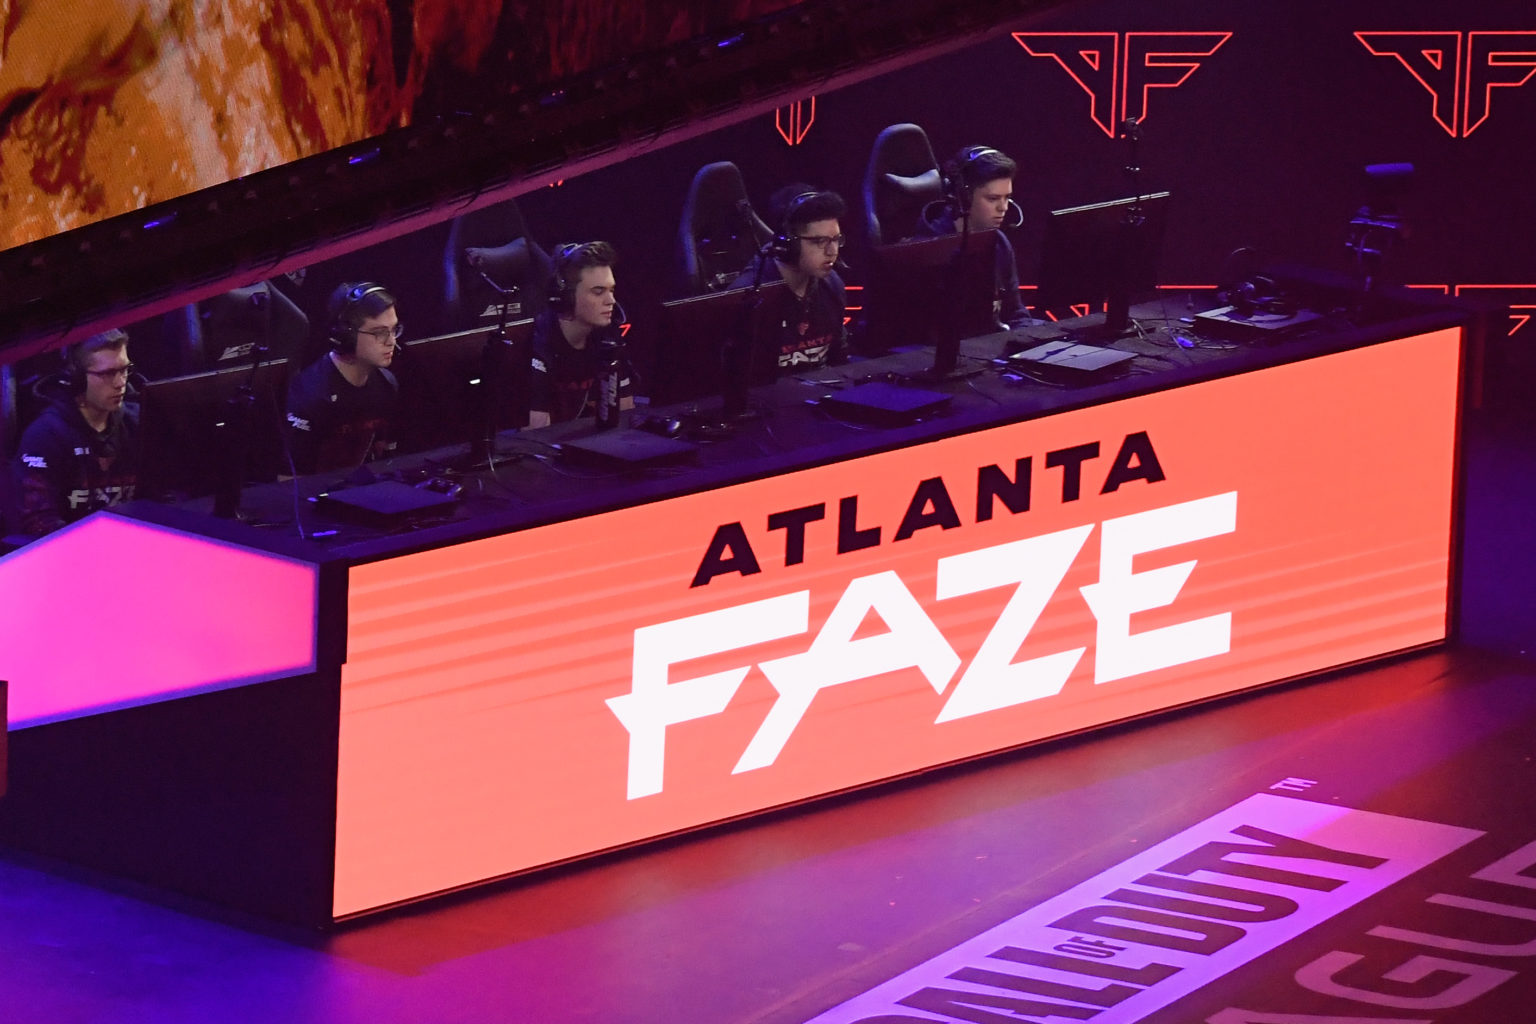 Atlanta FaZe: A New Way to Lead